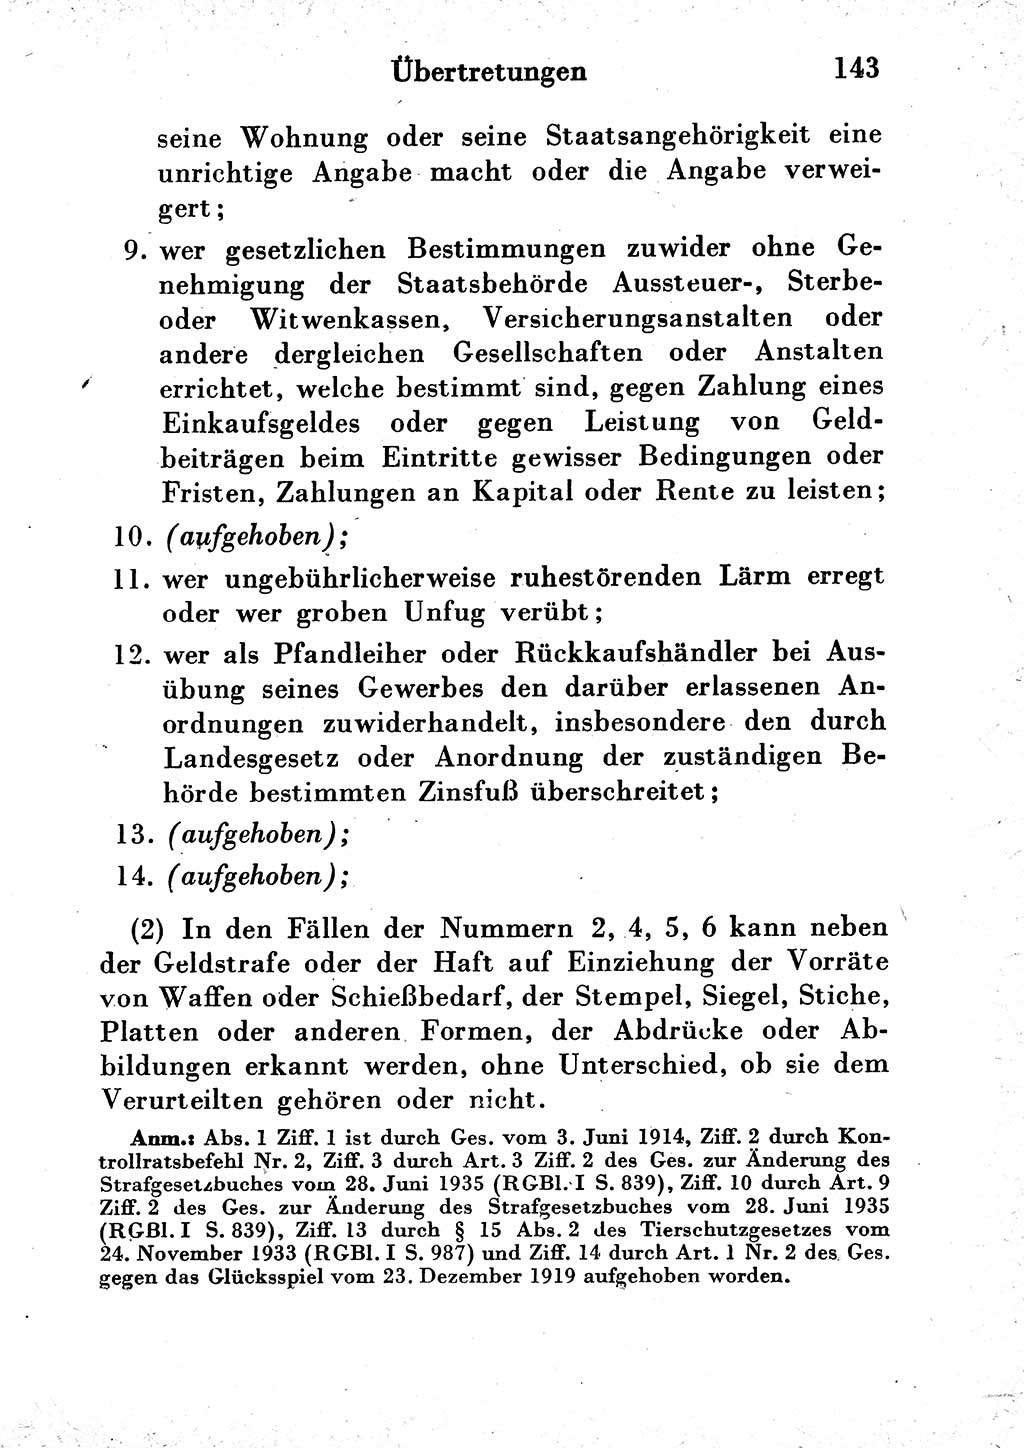 Strafgesetzbuch (StGB) und andere Strafgesetze [Deutsche Demokratische Republik (DDR)] 1954, Seite 143 (StGB Strafges. DDR 1954, S. 143)